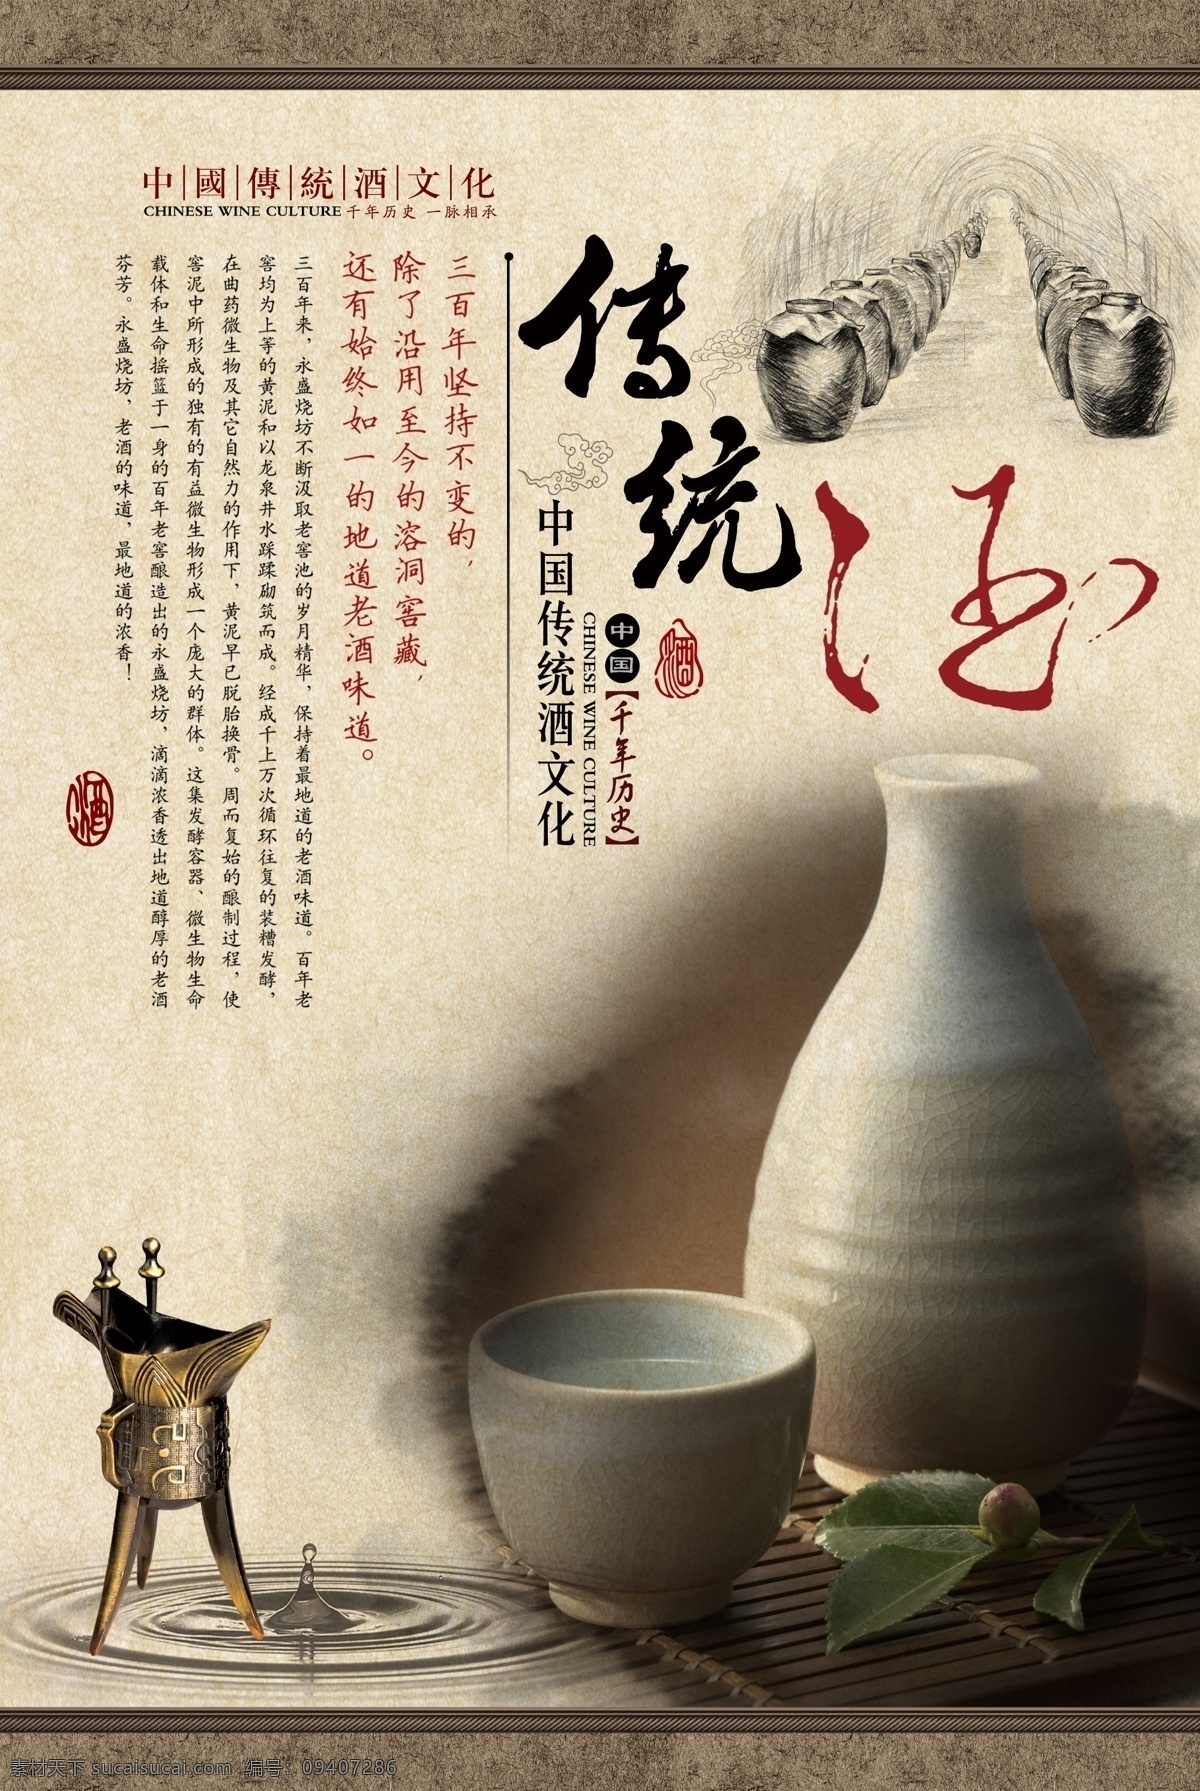 酒文化 酒文化海报 传统文化 窖藏文化海报 窖藏酒文化 中国传统文化 分层